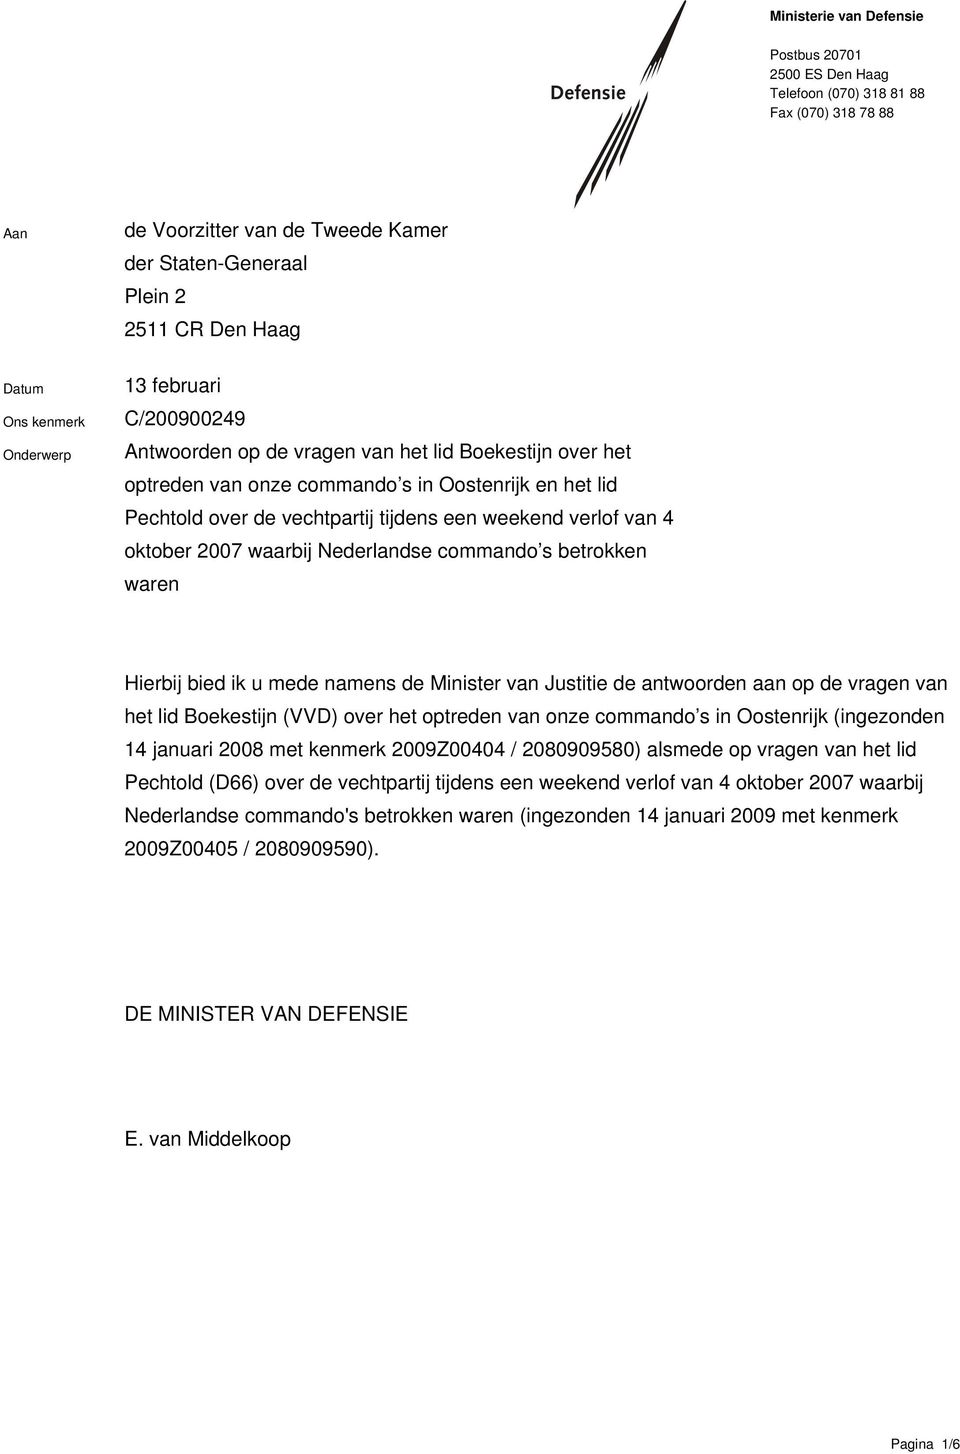 oktober 2007 waarbij Nederlandse commando s betrokken waren Hierbij bied ik u mede namens de Minister van Justitie de antwoorden aan op de vragen van het lid Boekestijn (VVD) over het optreden van